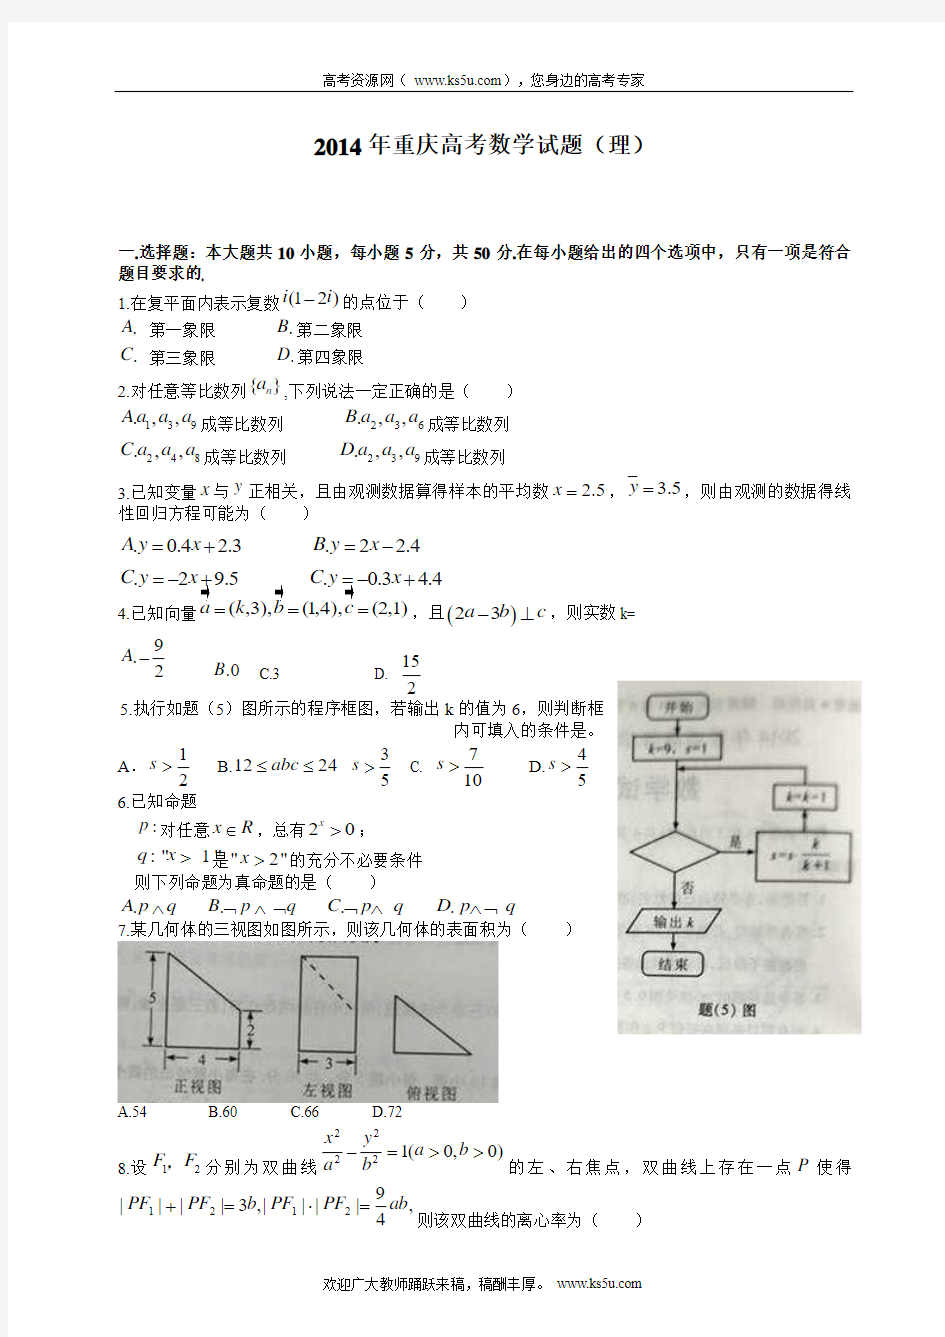 2014年高考真题——理科数学(重庆卷)